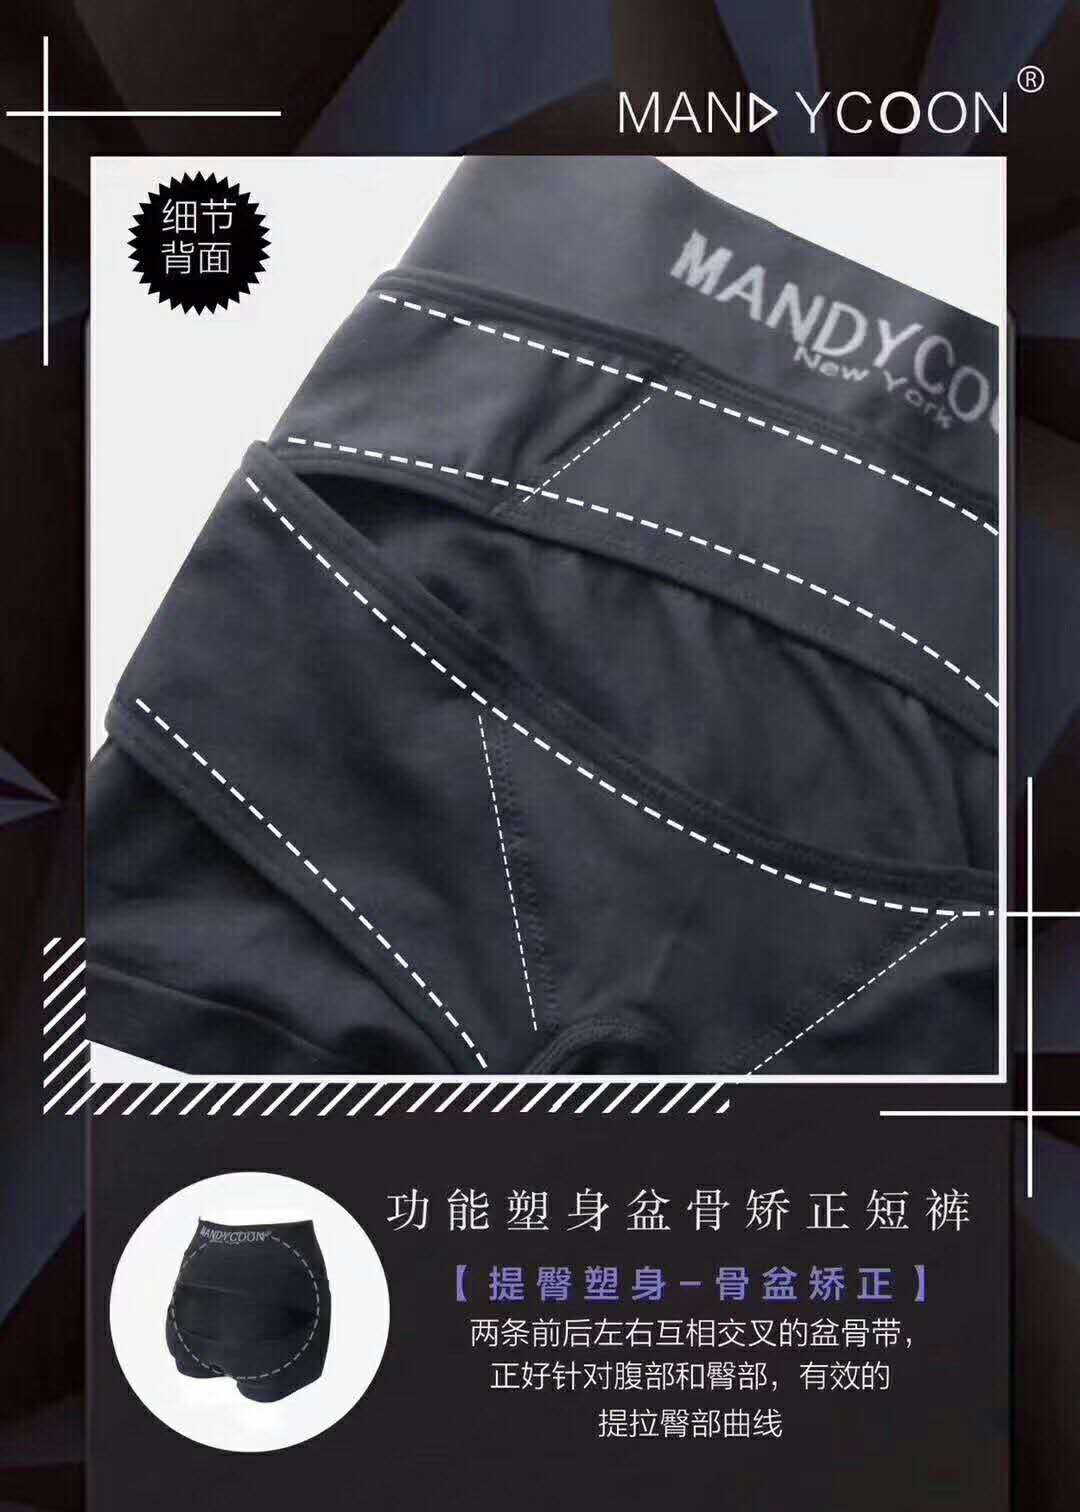  Mandycoon骨盘矫正内裤官方正品直销，厂家一手货源，全网免费代理